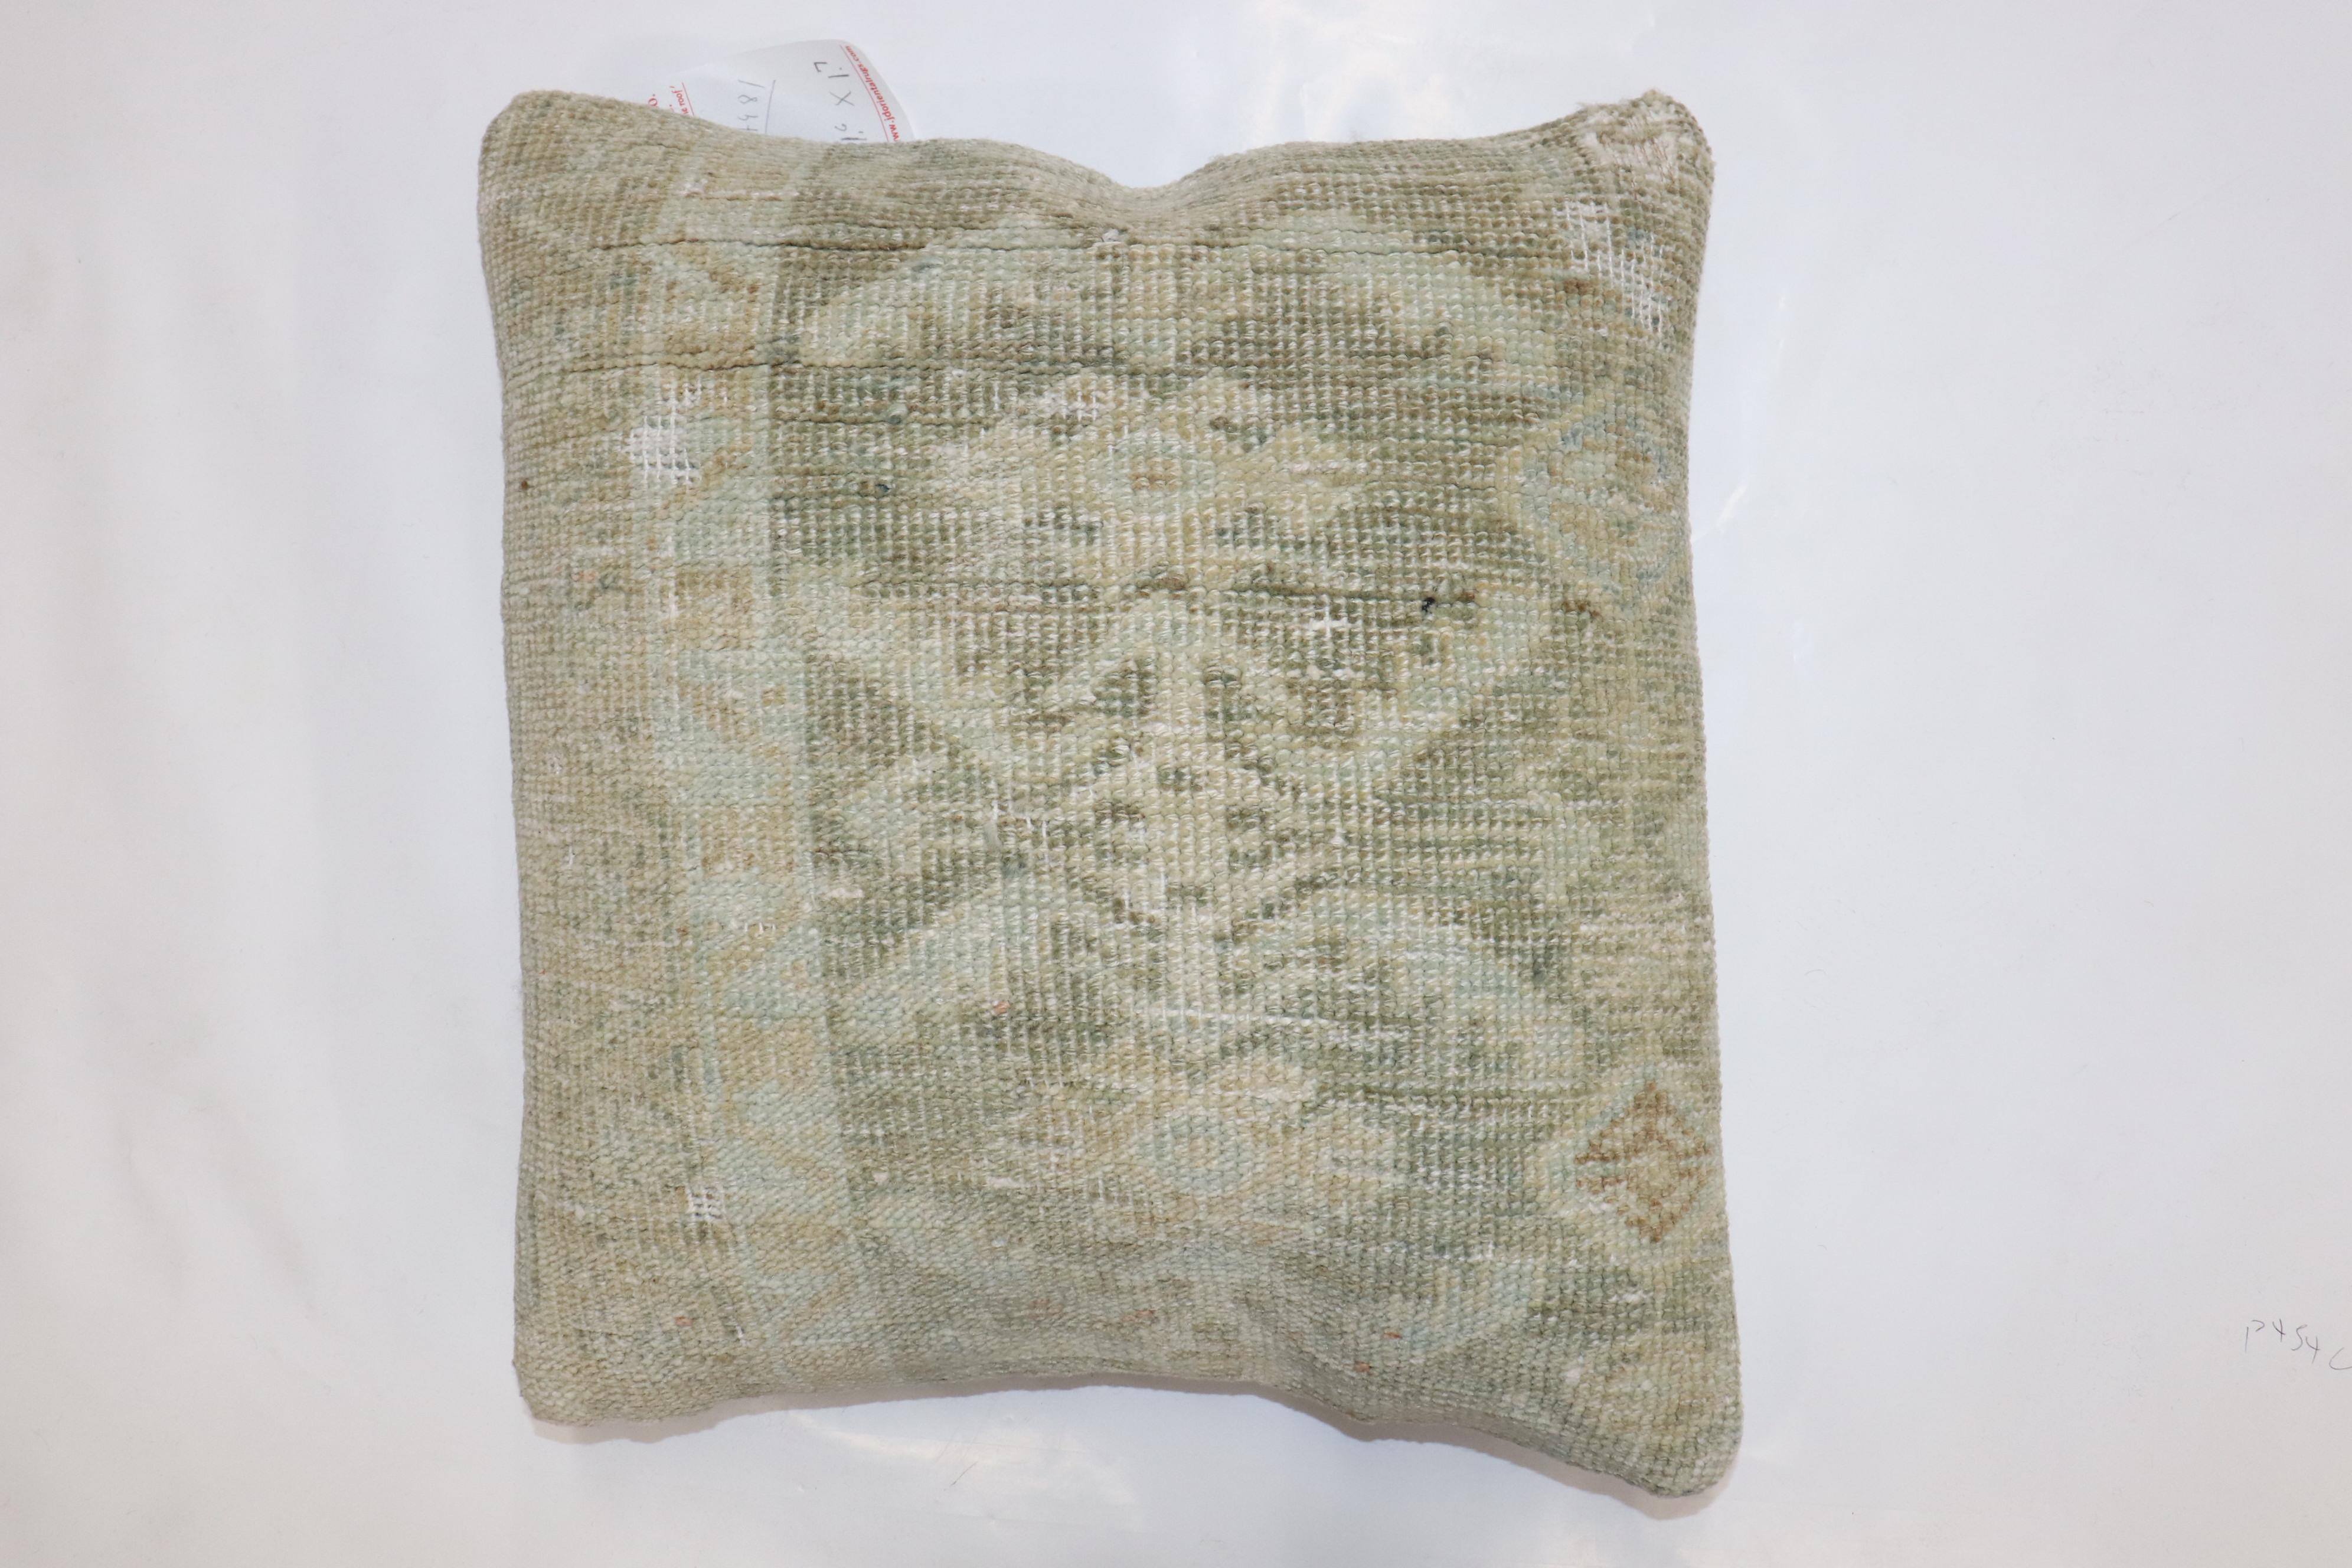 Kissen aus einem antiken persischen Malayer-Teppich in blassem Grün

Maße: 18'' x 19''.